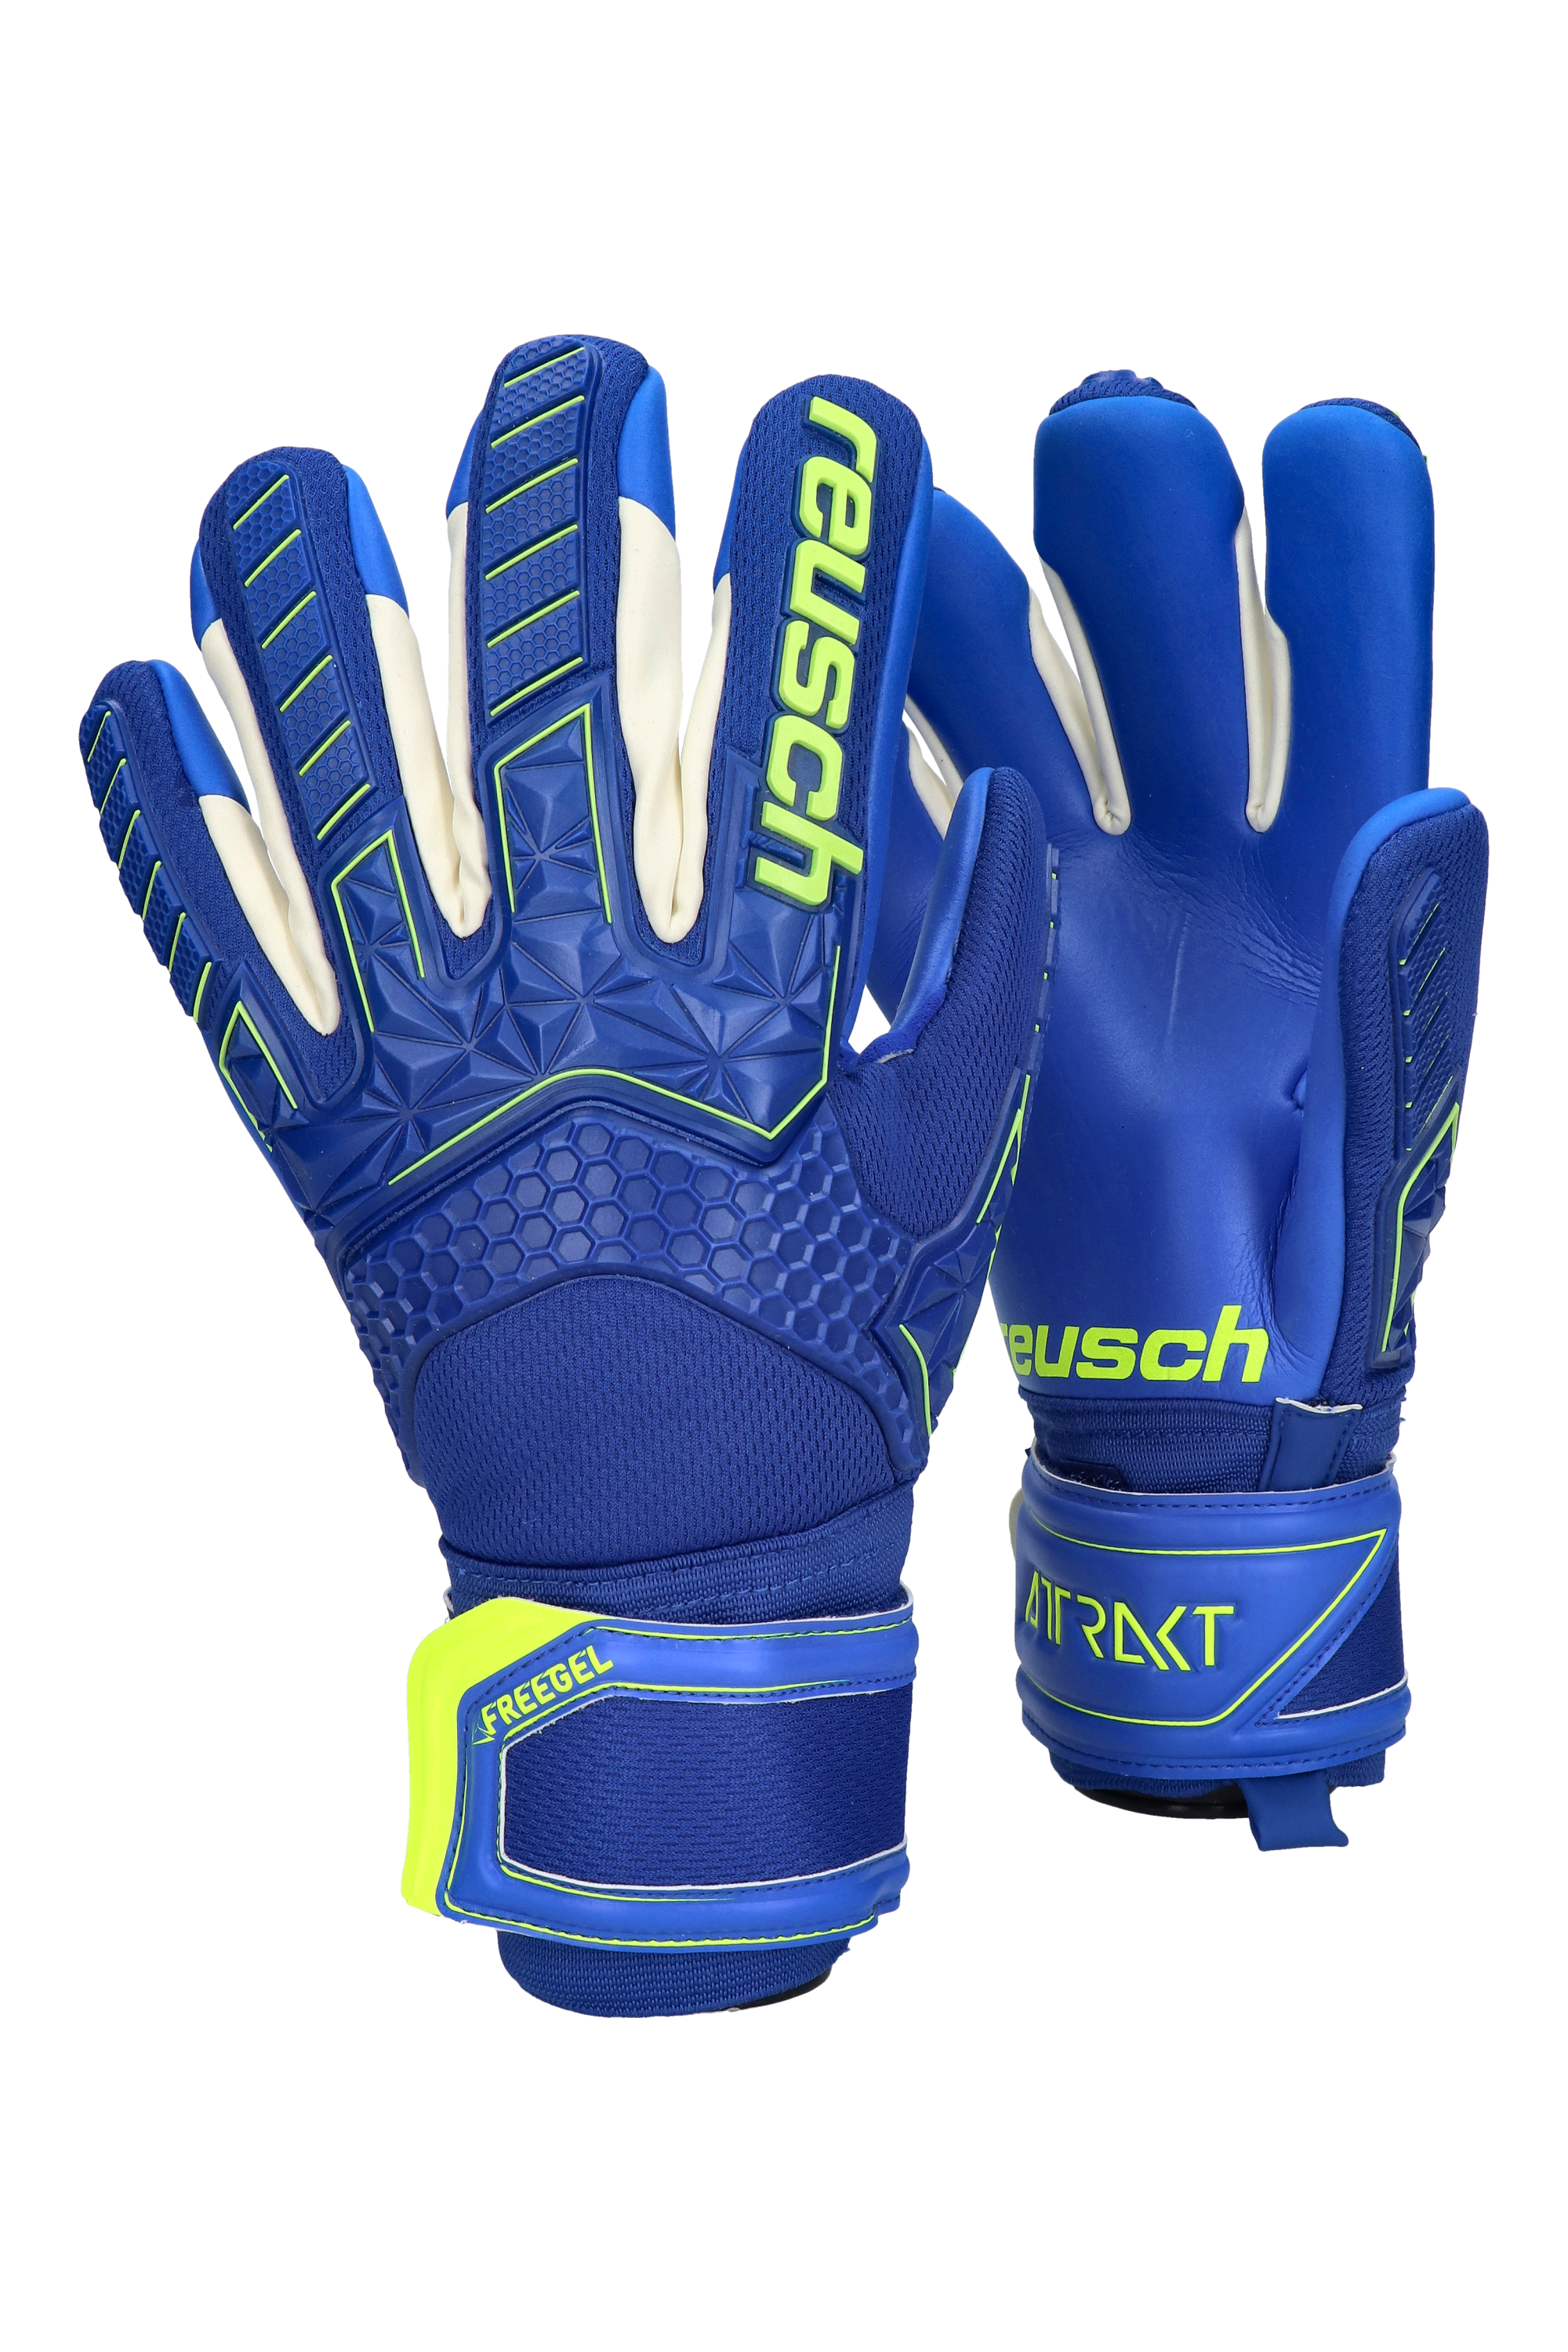 Details about   Reusch Attrakt Freegel S1 Finger Support LTD Goalkeeper Gloves 